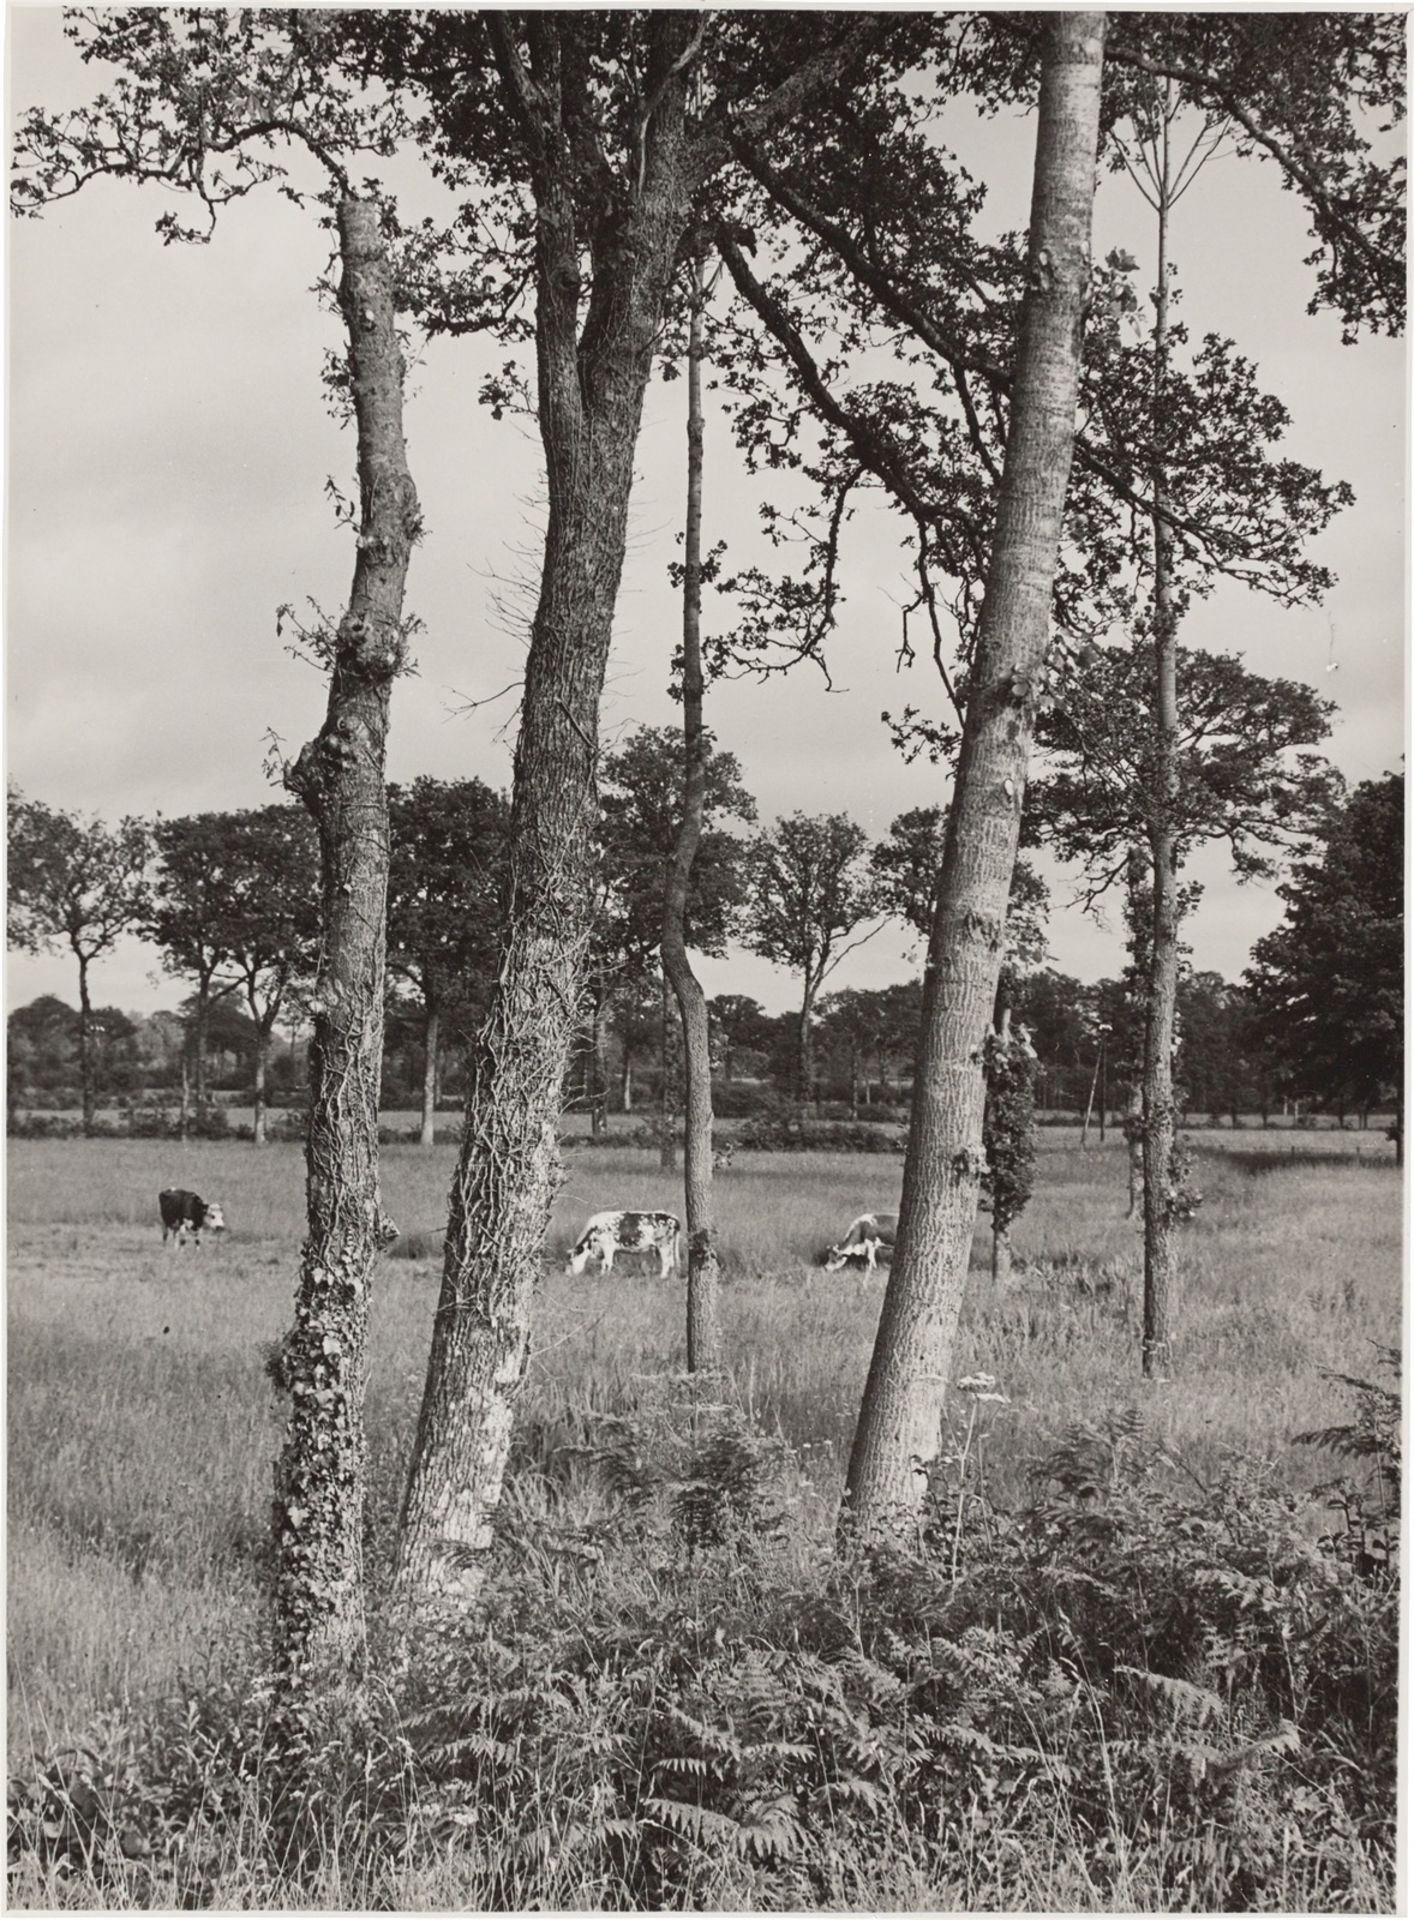 Albert Renger-Patzsch. Kuhweide, Kühe und Bäume. Vermutlich 1930er-Jahre